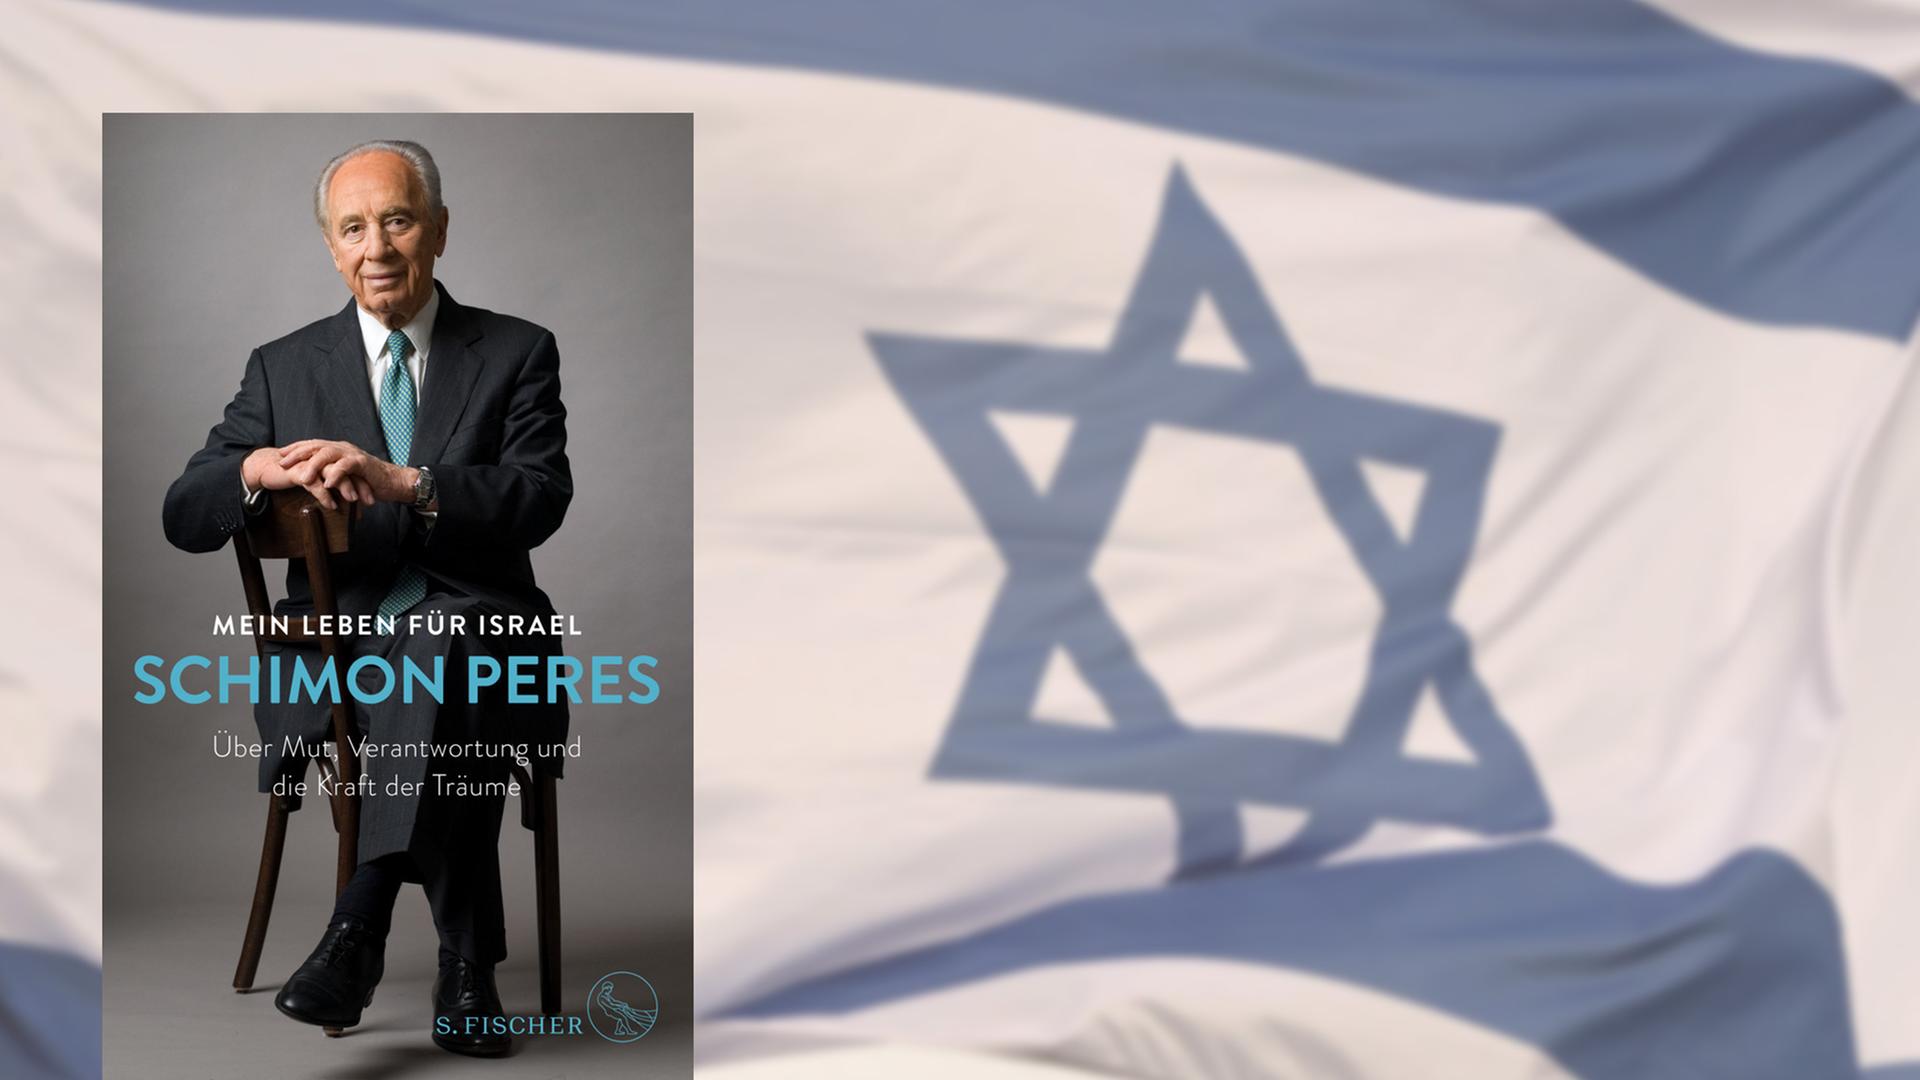 Buchcover "Mein Leben für Israel" von Shimon Peres, im Hintergrund eine israelische Flagge